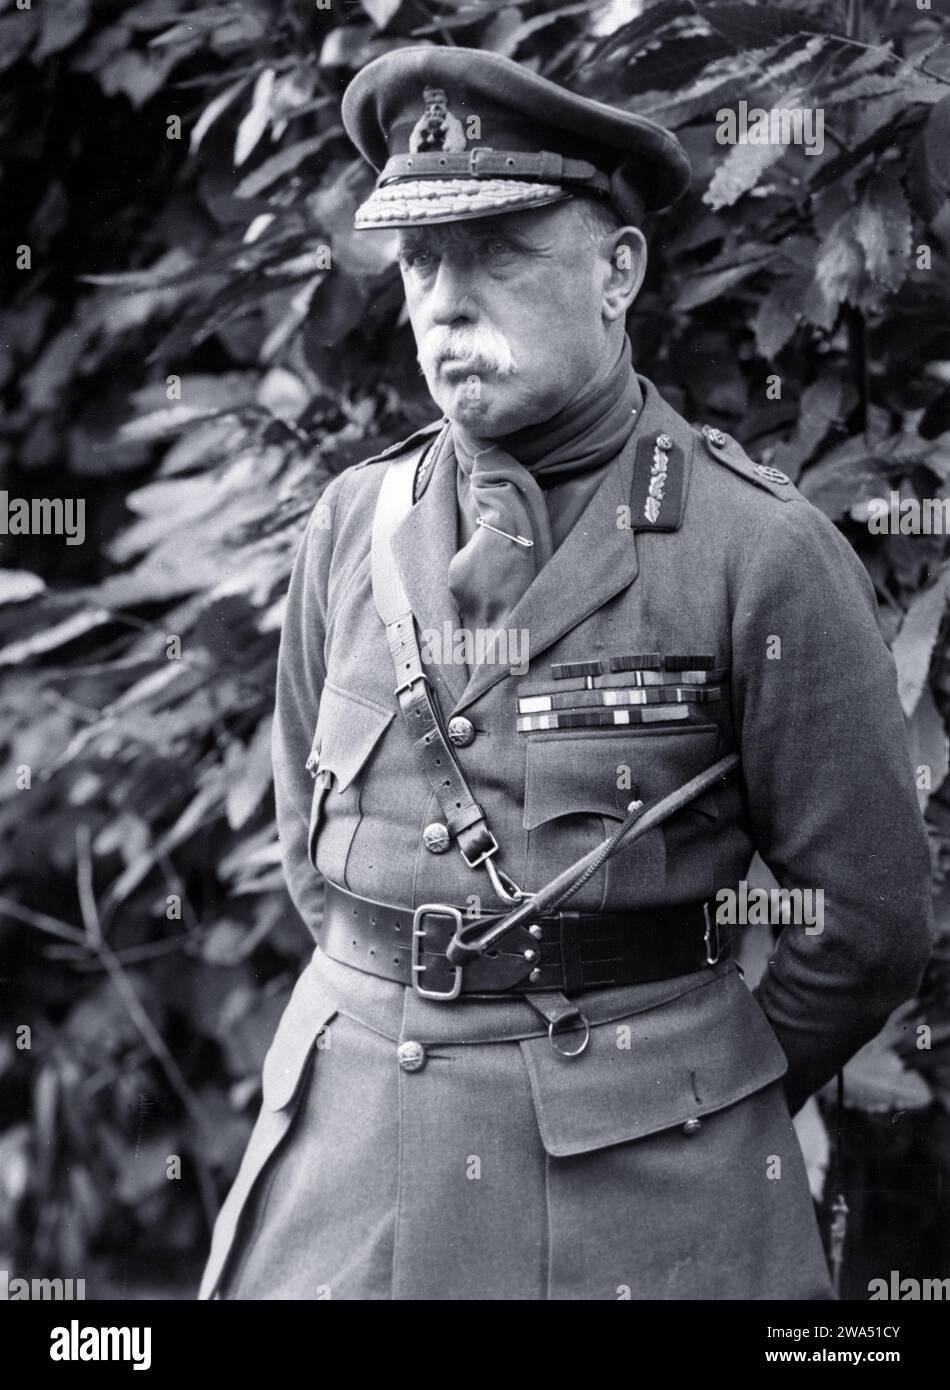 Sir John French, erster Oberbefehlshaber der British Expeditionary Force (BEF), fotografiert in Blendecques, Frankreich. Fotograf: H. D. Girdwood. Stockfoto